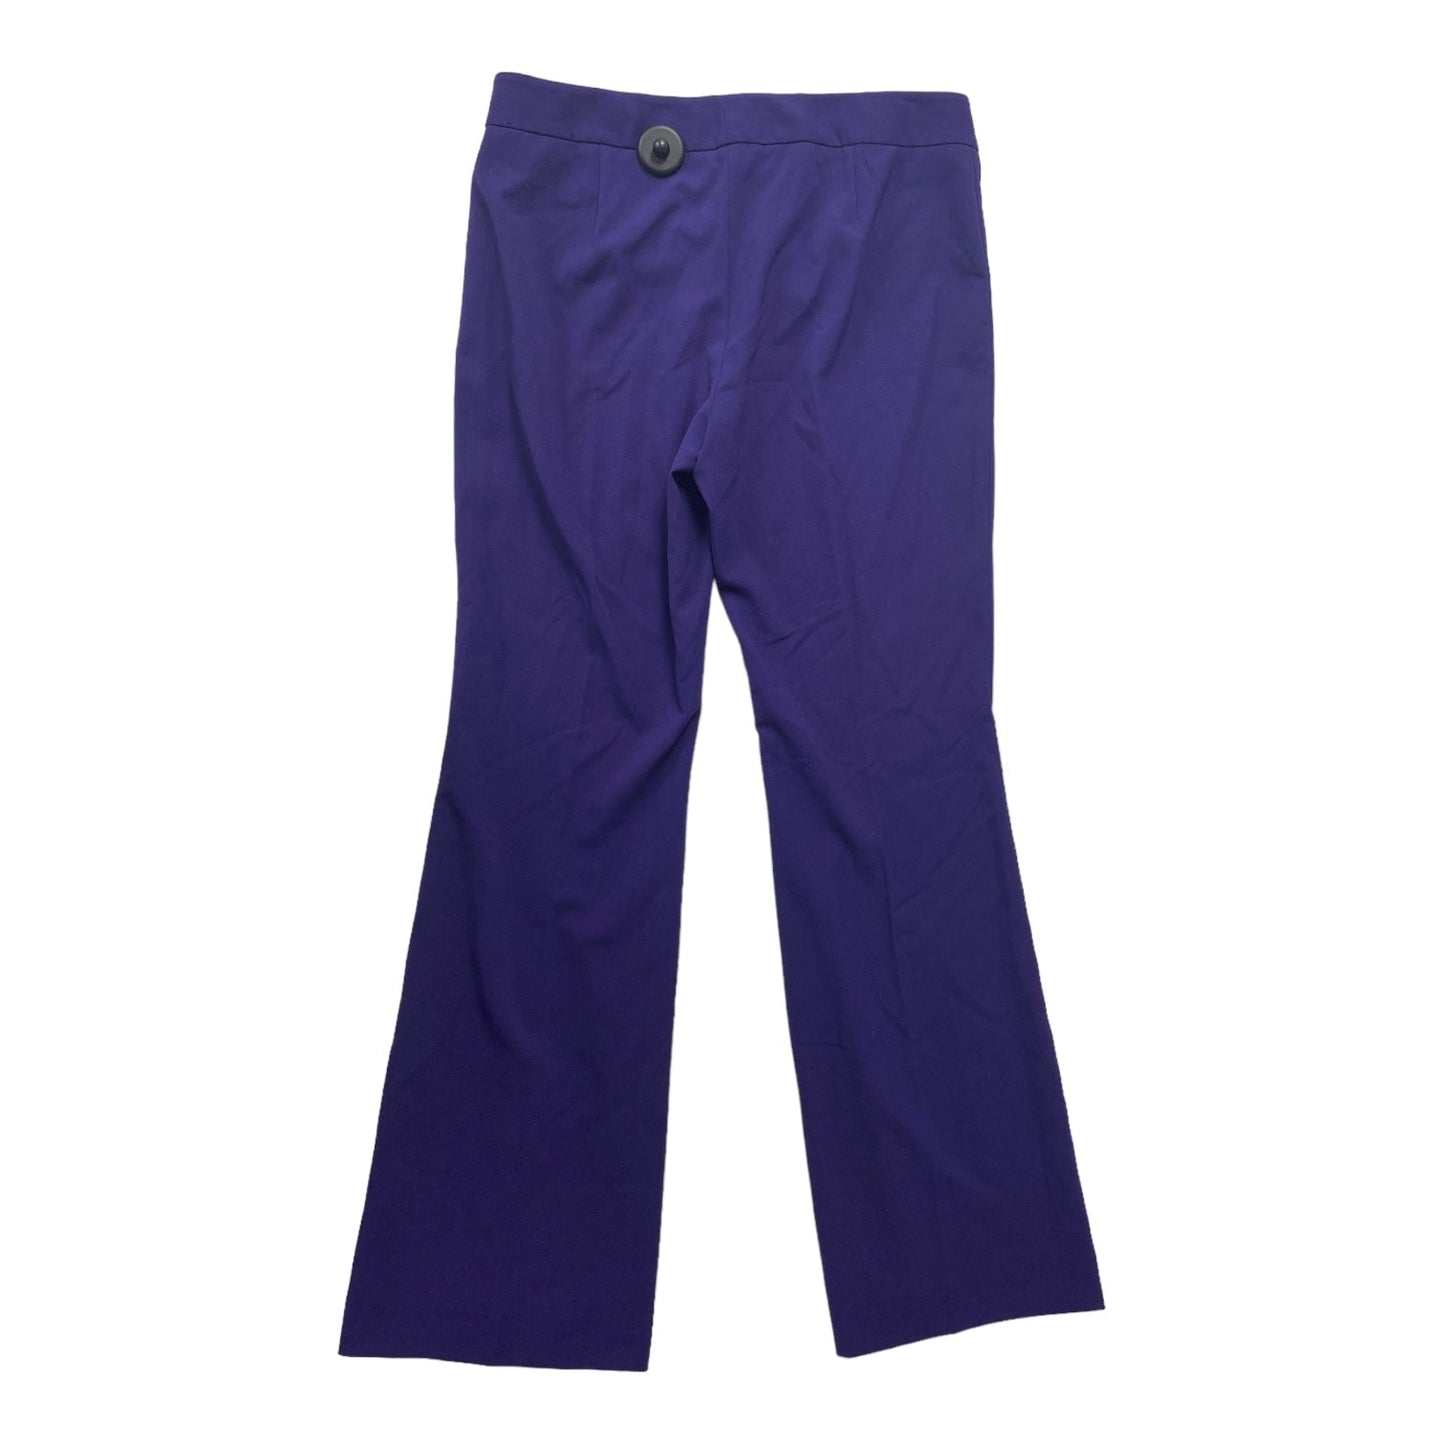 Purple Pants Dress Nine West, Size 8